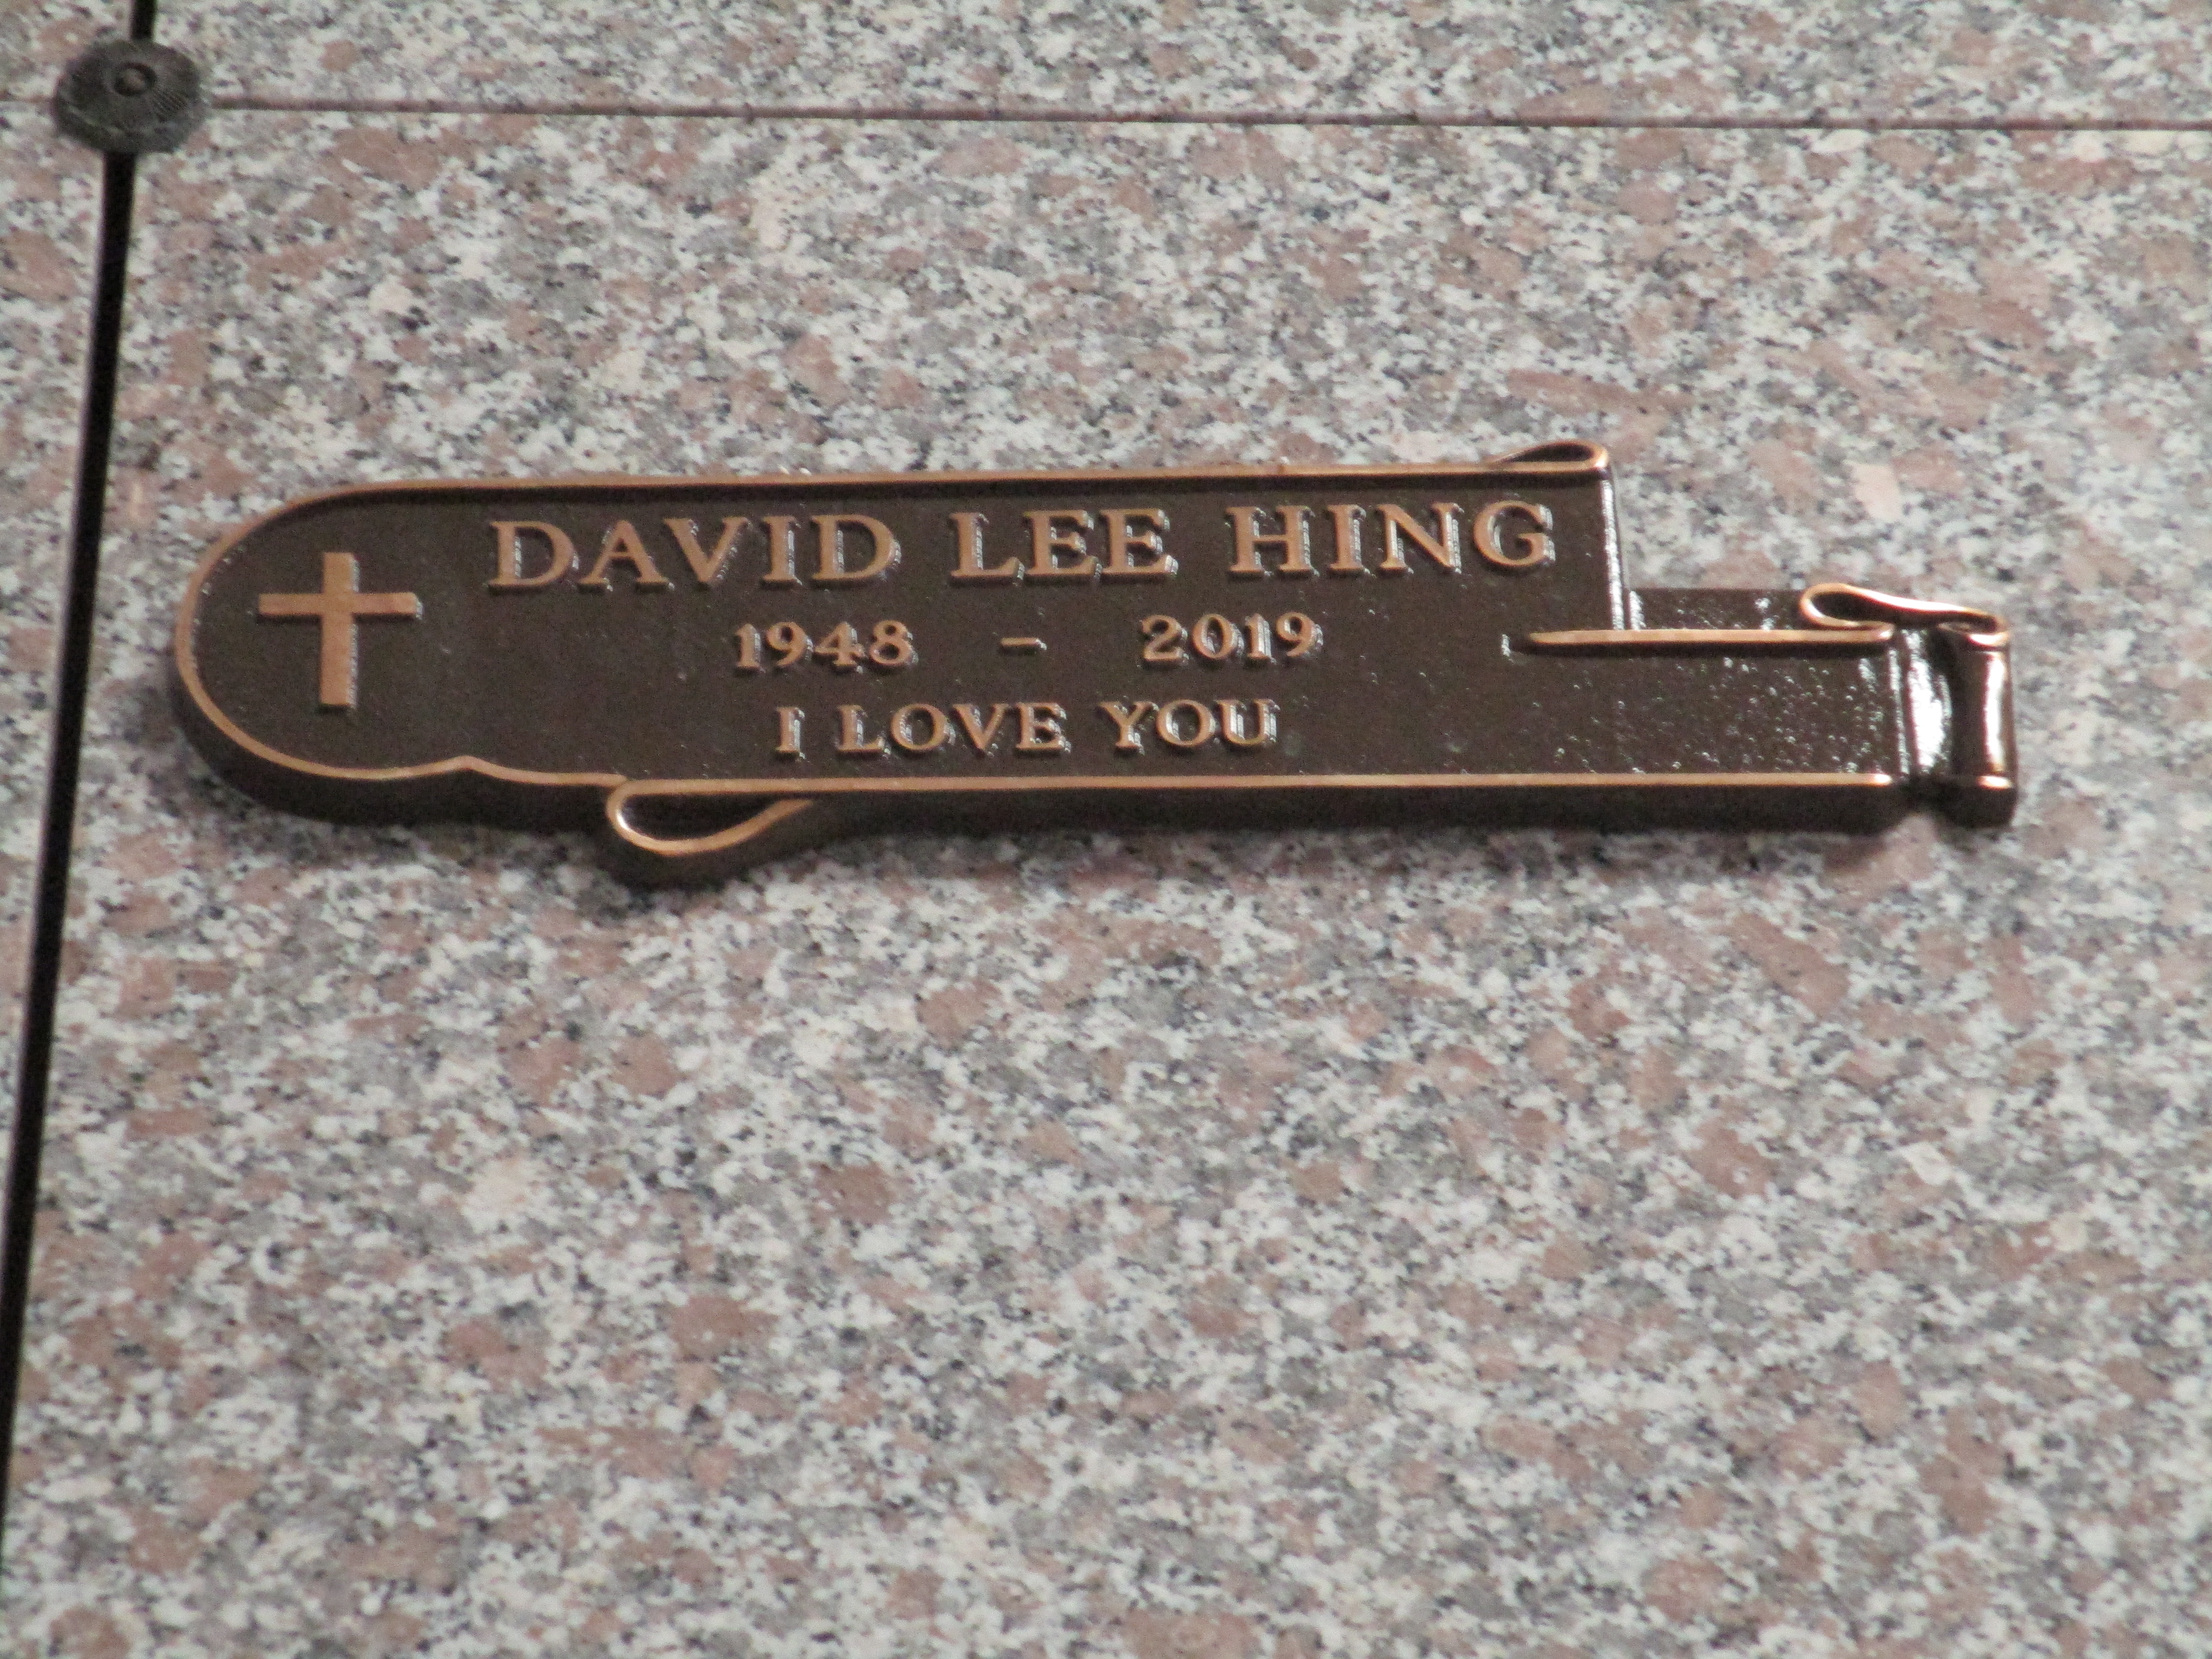 David Lee Hing